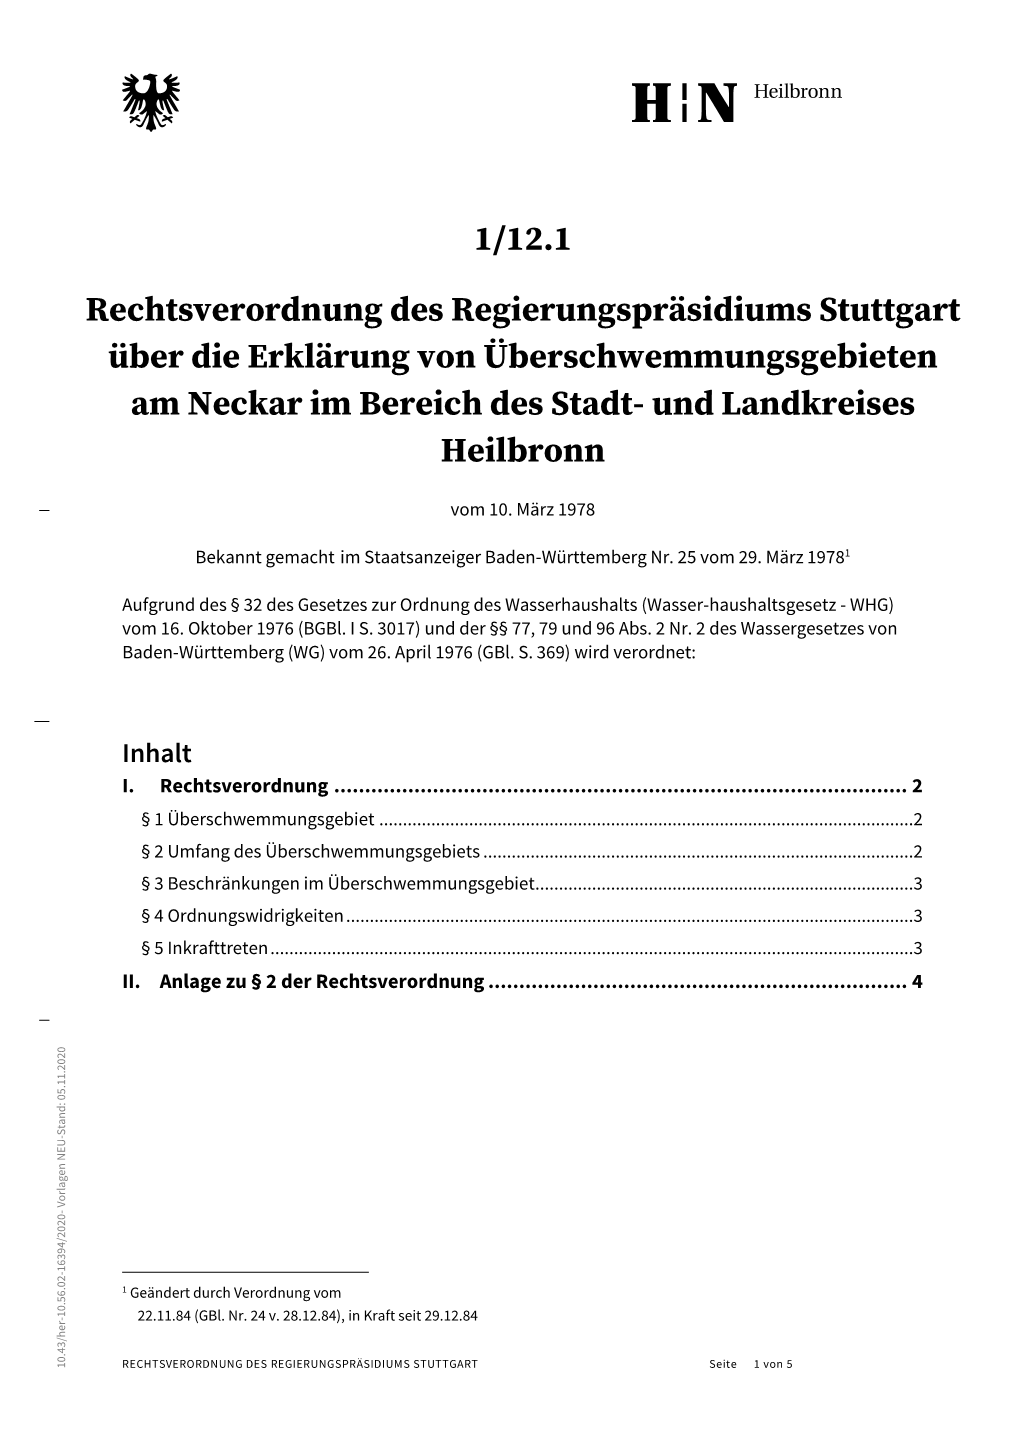 1/12.1 Rechtsverordnung Des Regierungspräsidiums Stuttgart Über Die Erklärung Von Überschwemmungsgebieten Am Neckar Im